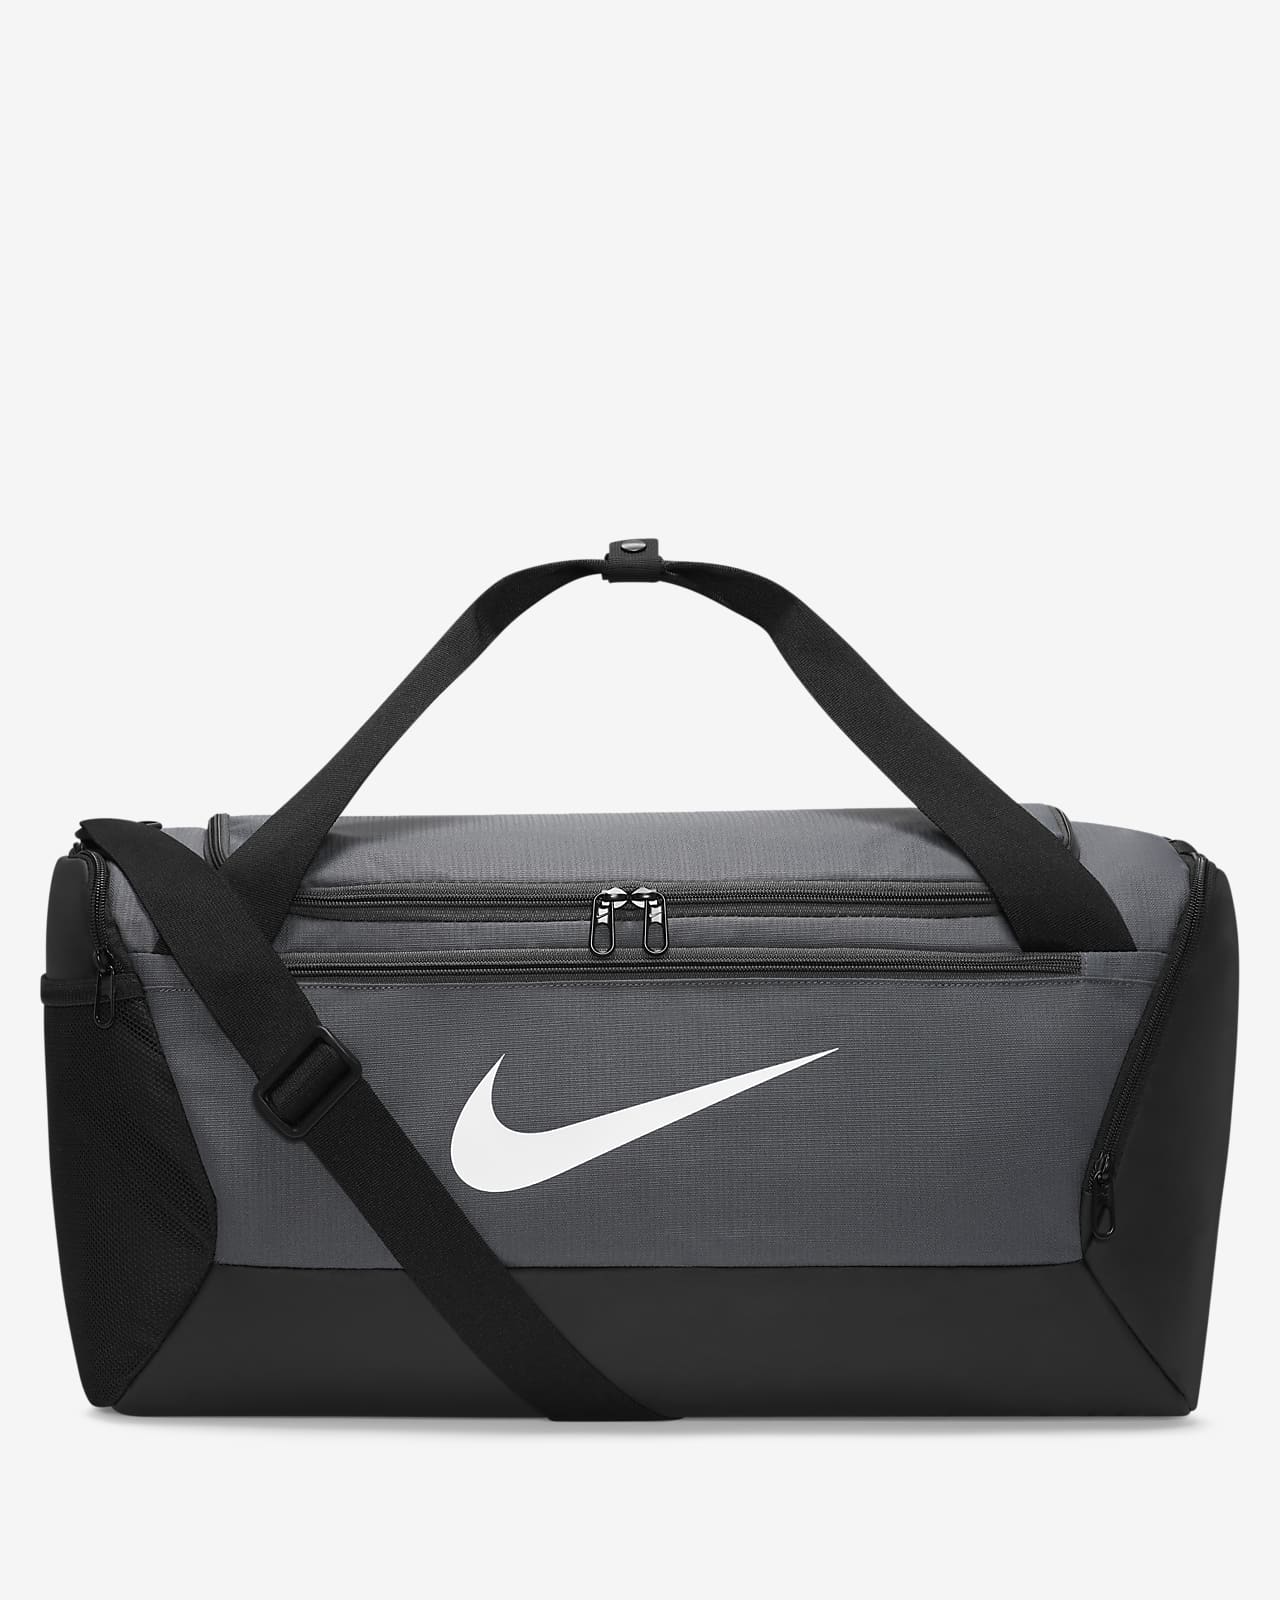 Τσάντα γυμναστηρίου για προπόνηση Nike Brasilia 9.5 (μέγεθος S, 41 L)